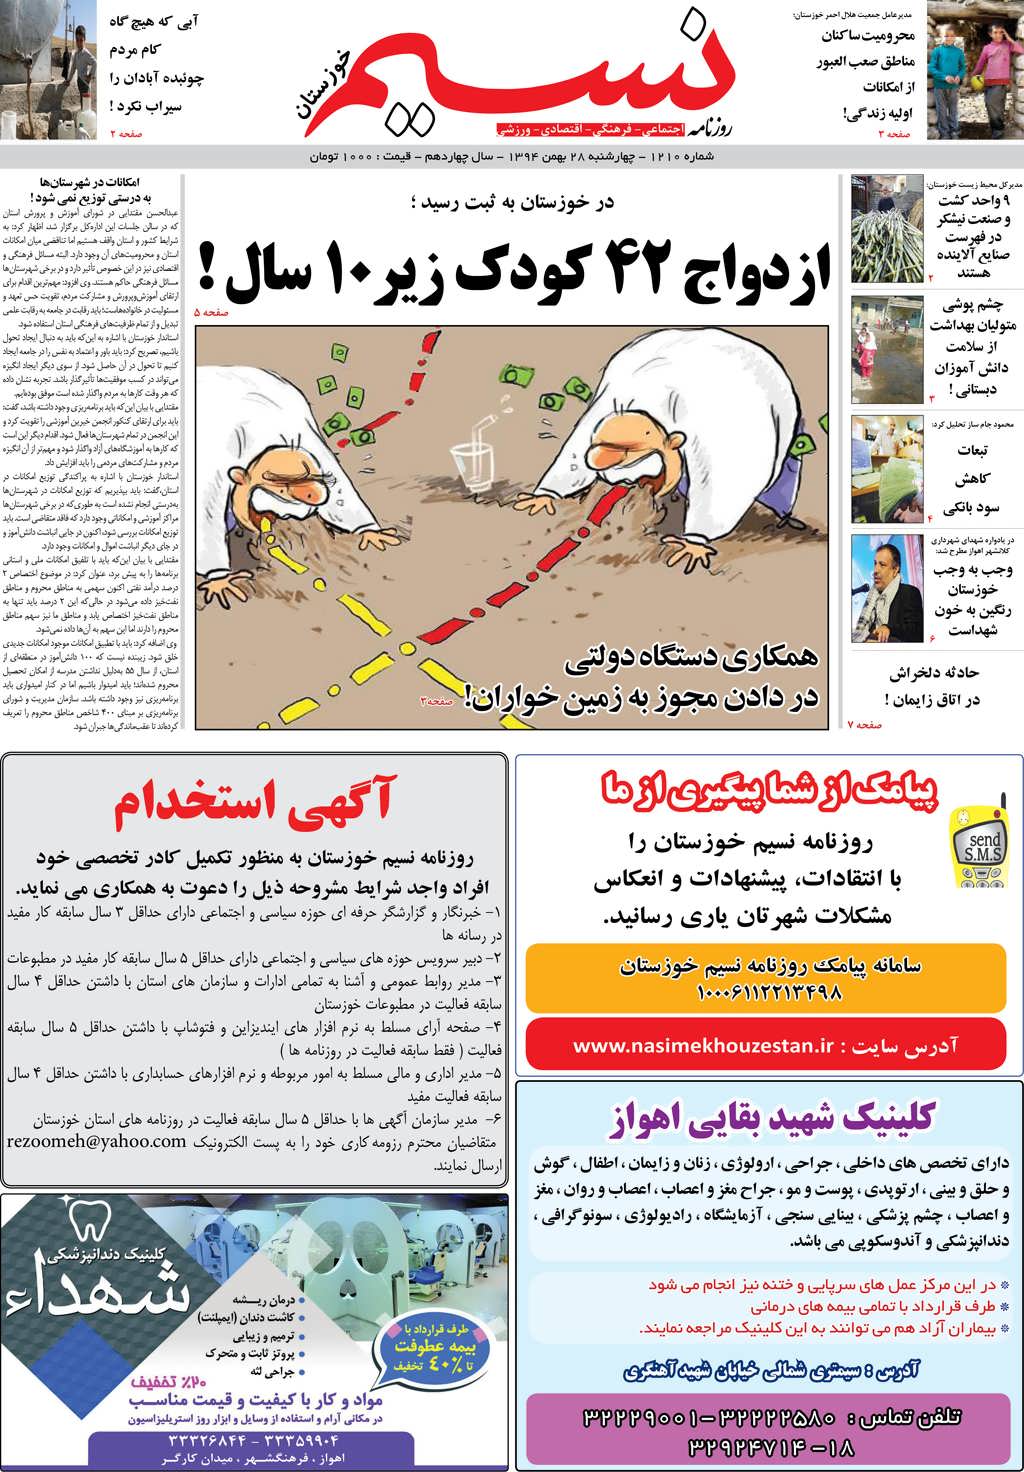 صفحه اصلی روزنامه نسیم شماره 1210